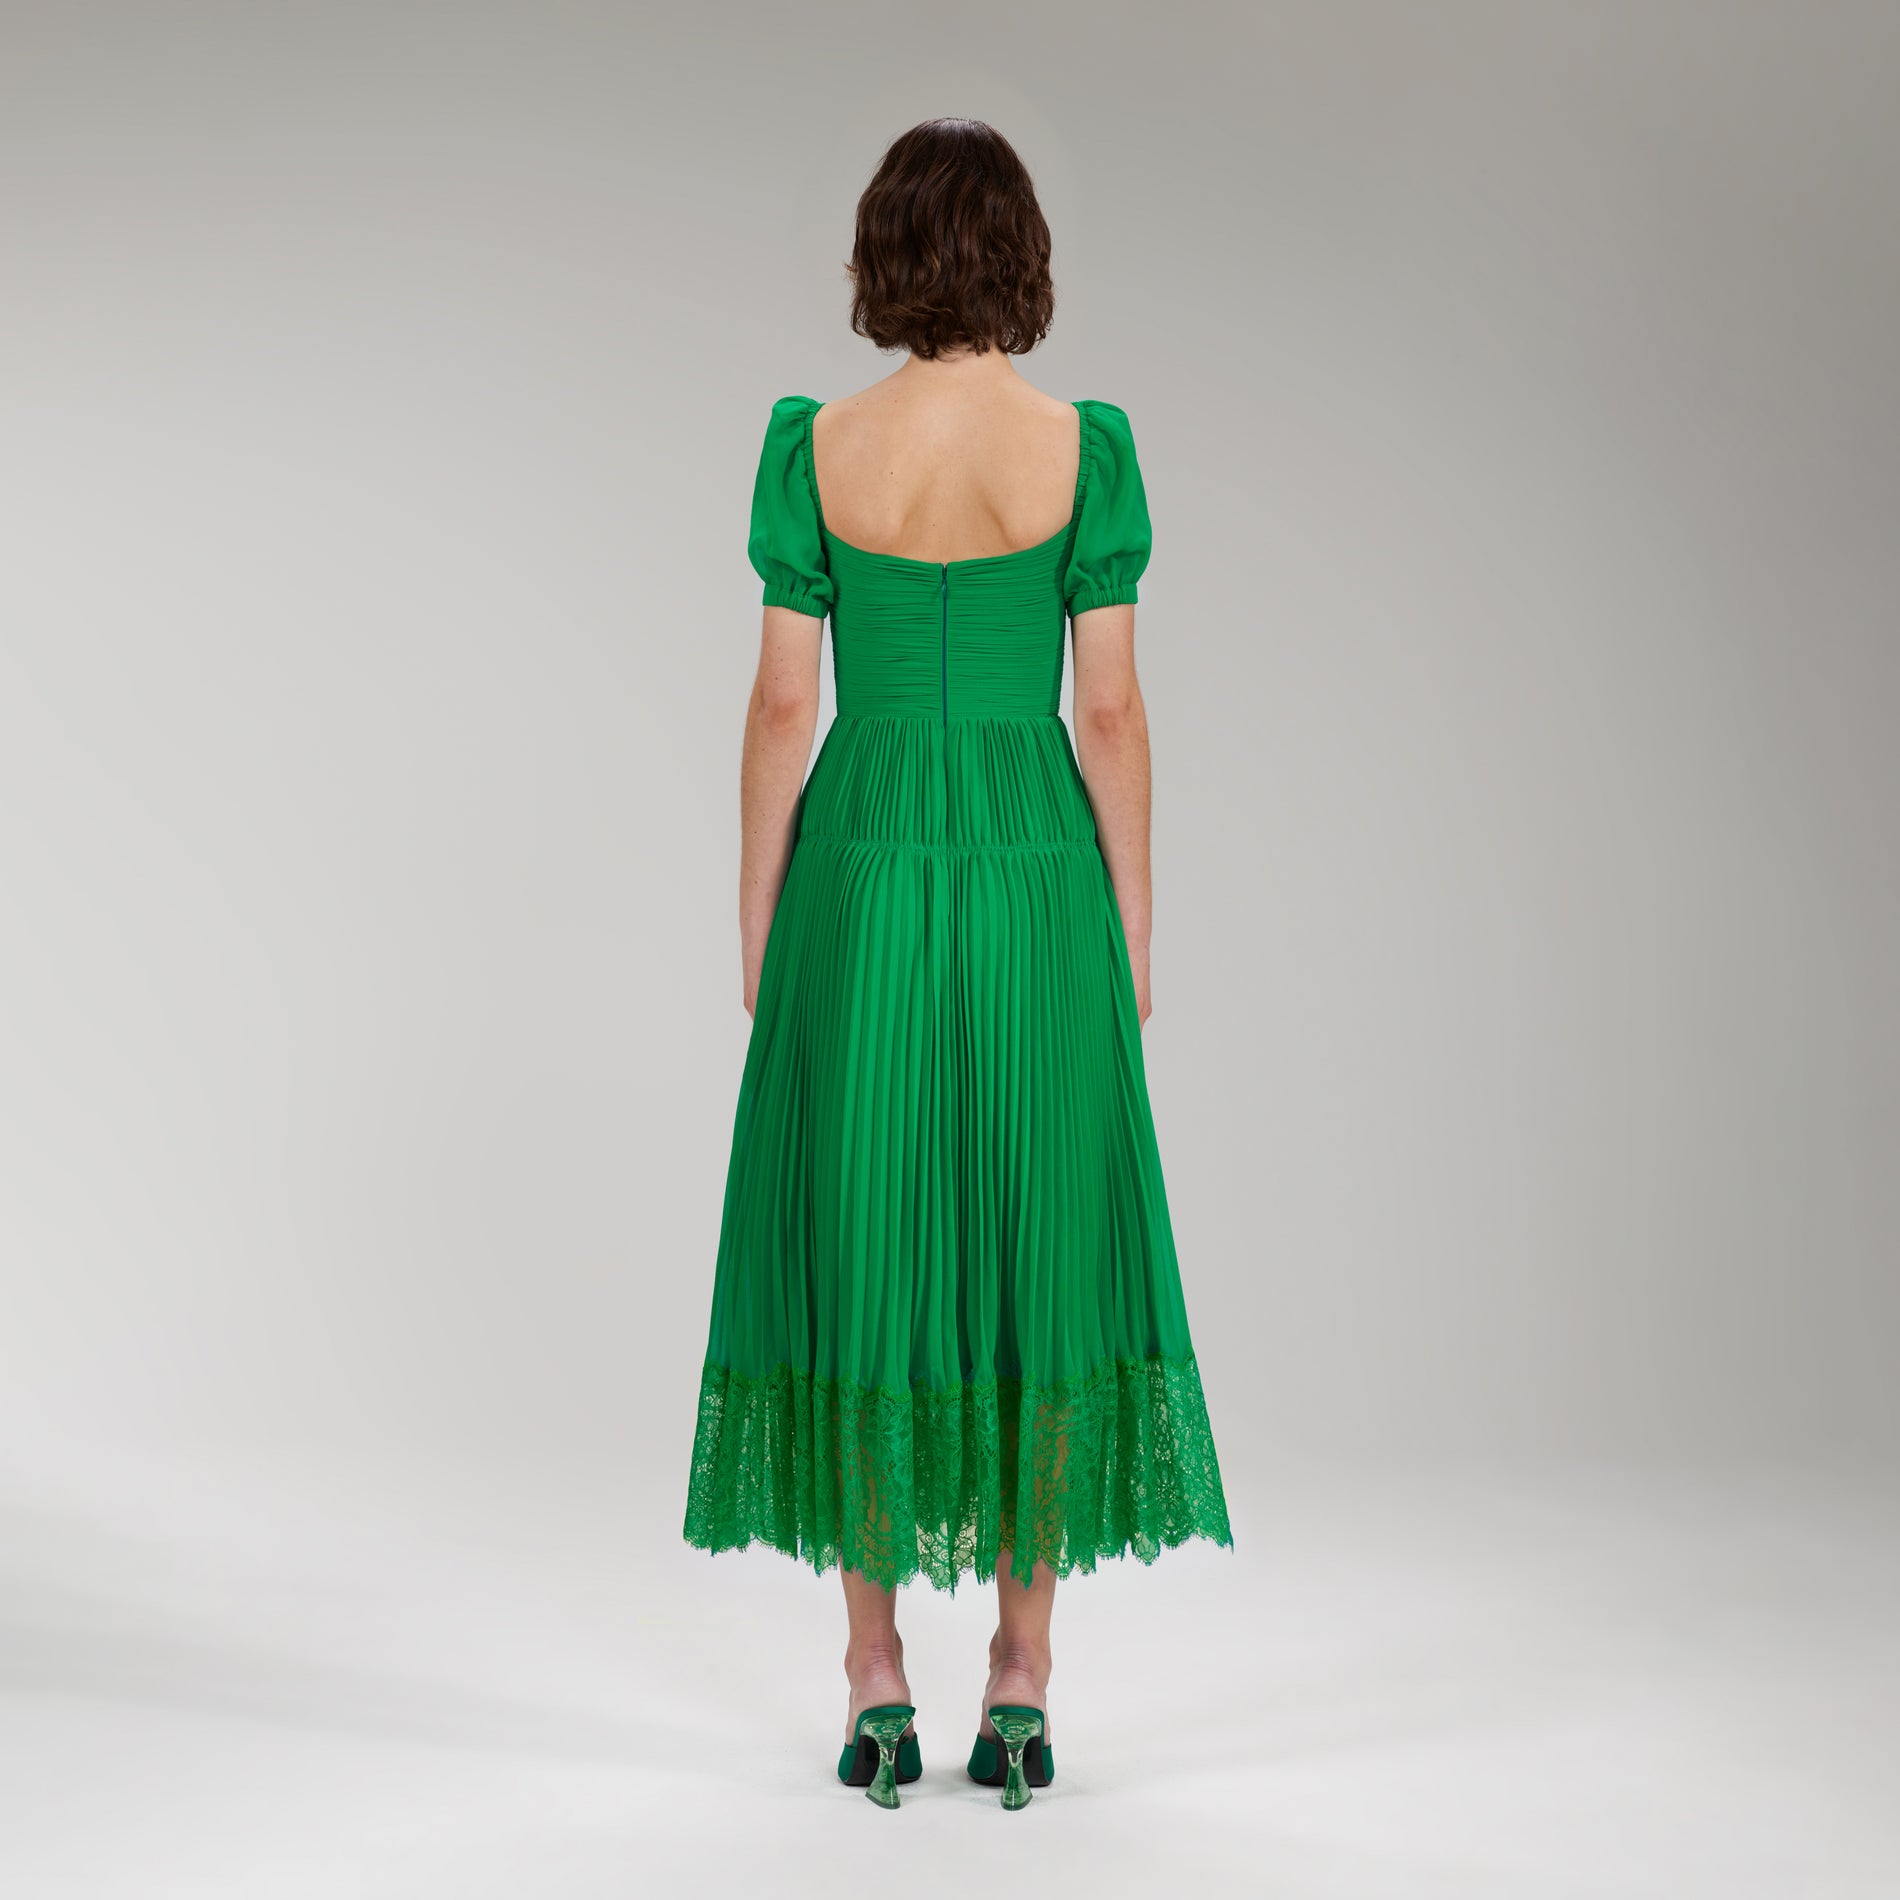 A woman wearing the Bright Green Chiffon Cut Out Midi Dress